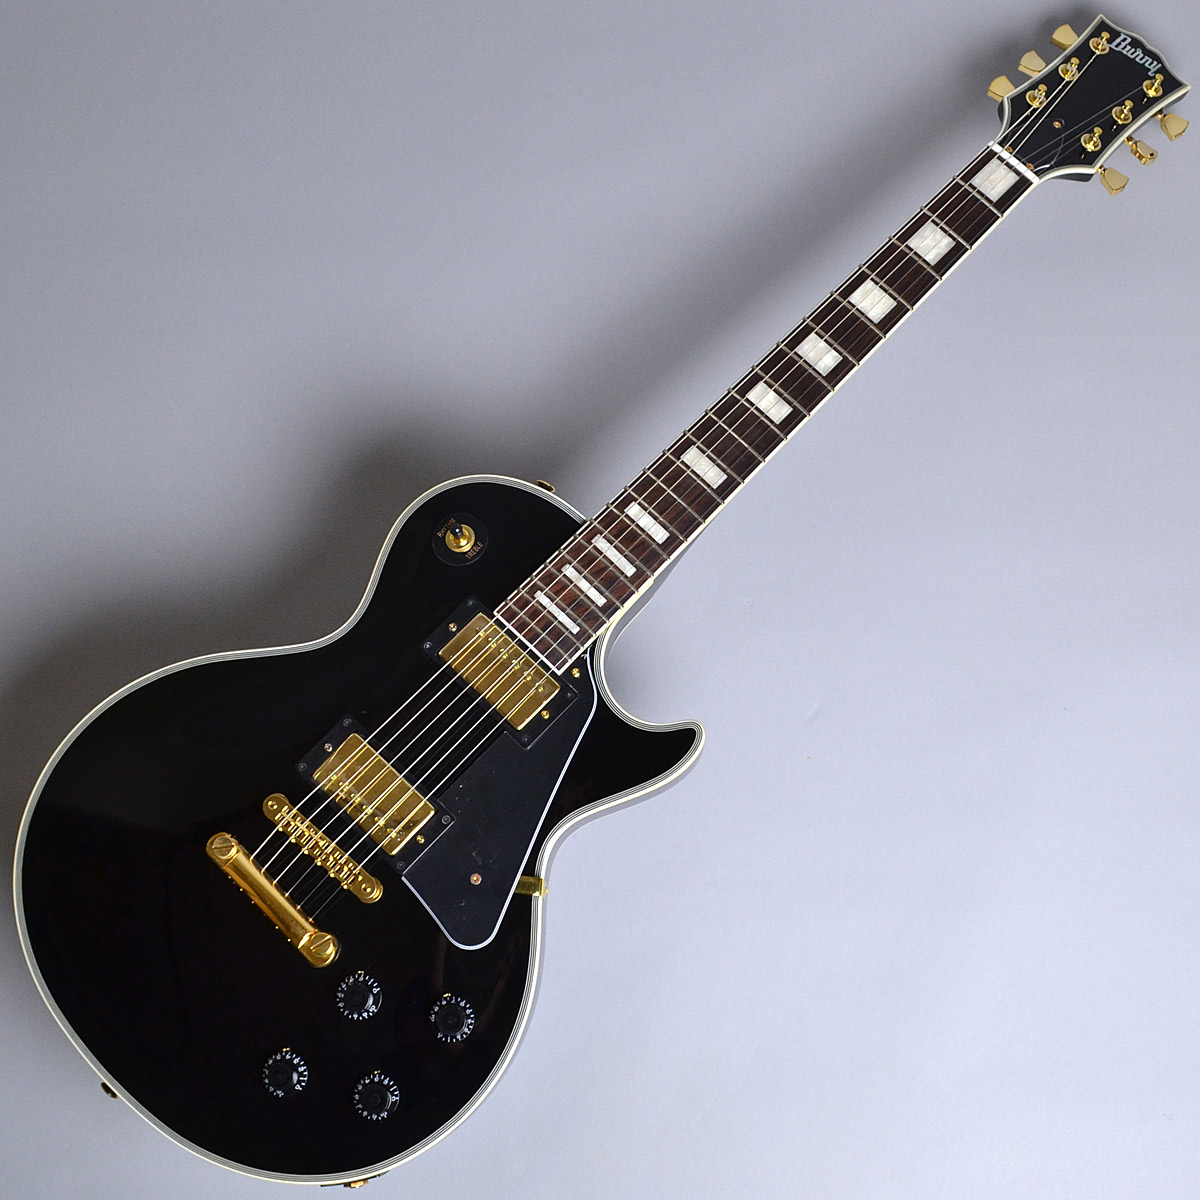 Burny SRLC55 Black レスポールカスタムタイプ エレキギター ブラック 